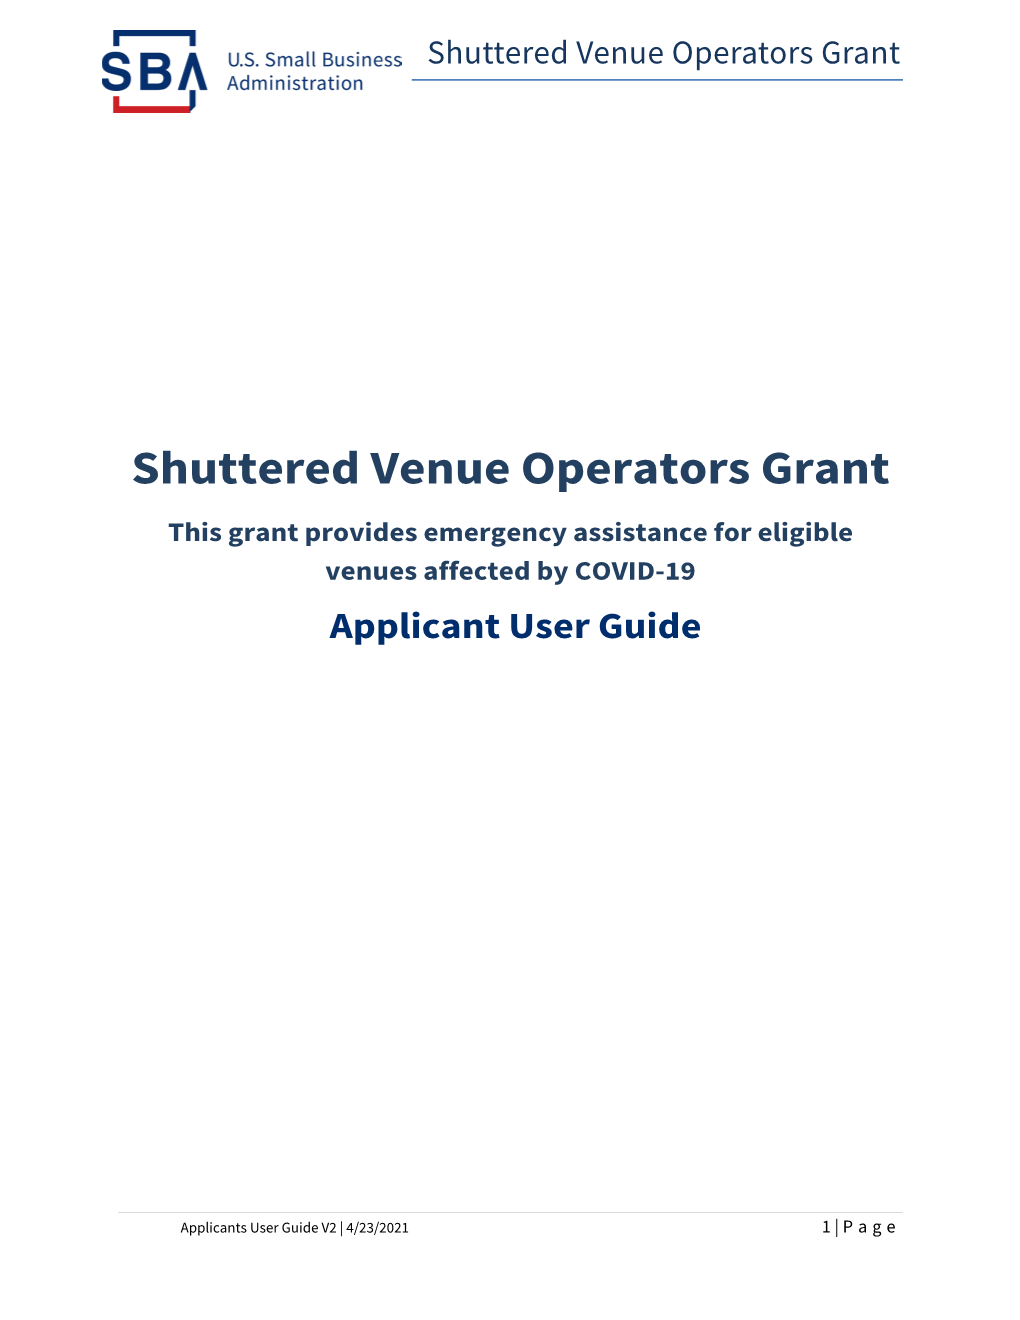 Shuttered Venue Operators Grant: Applicant User Guide